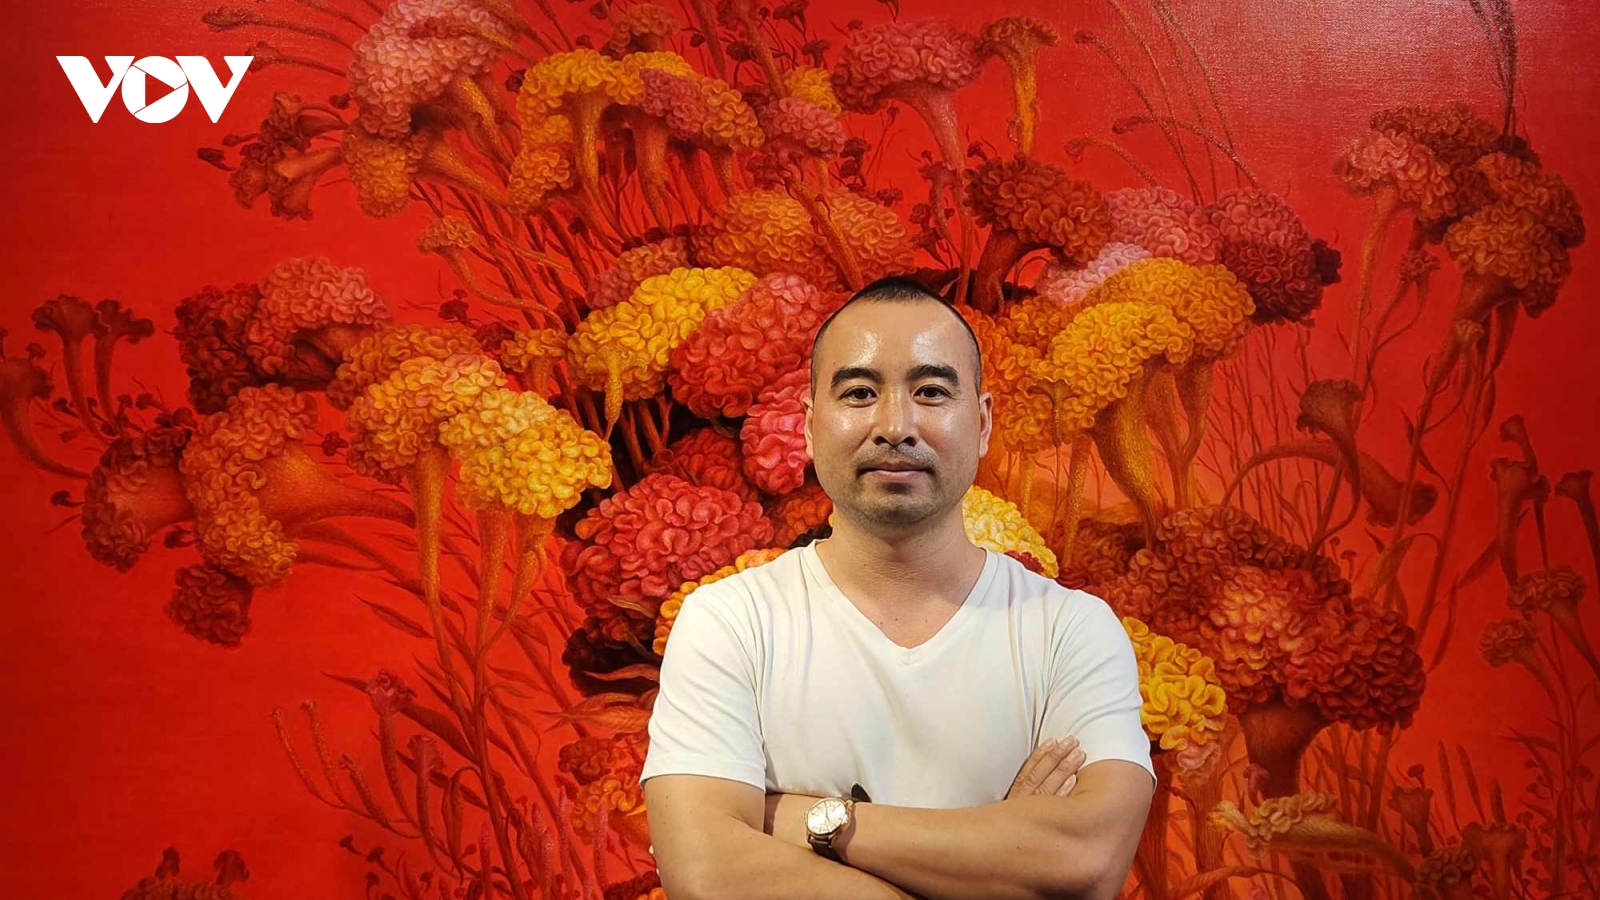 Hoa mào gà đẹp quyến rũ trong tranh của họa sĩ Nguyễn Khắc Chinh